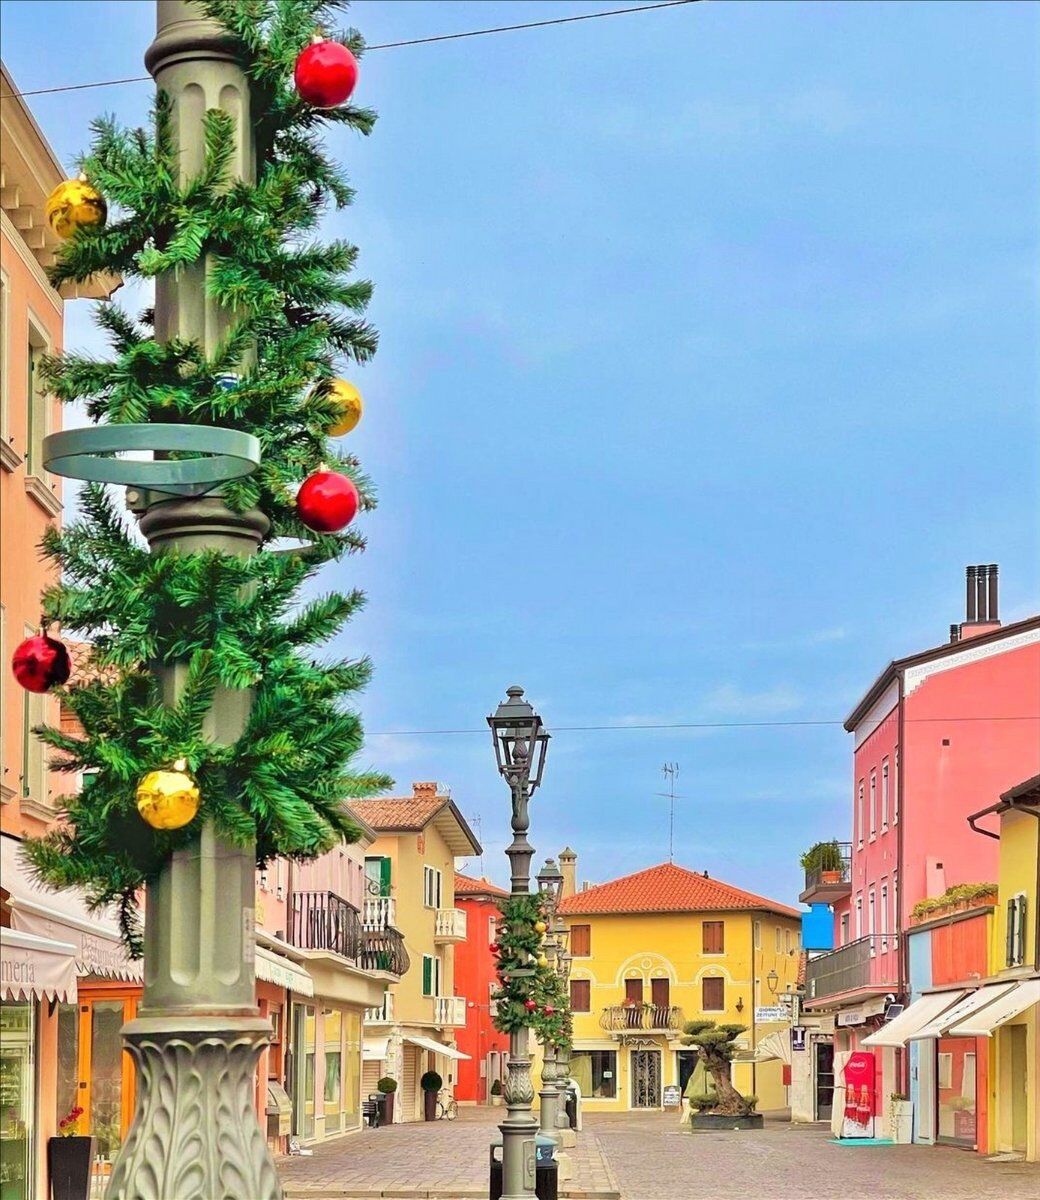 Passeggiata a Caorle: il borgo e la magia del Natale desktop picture